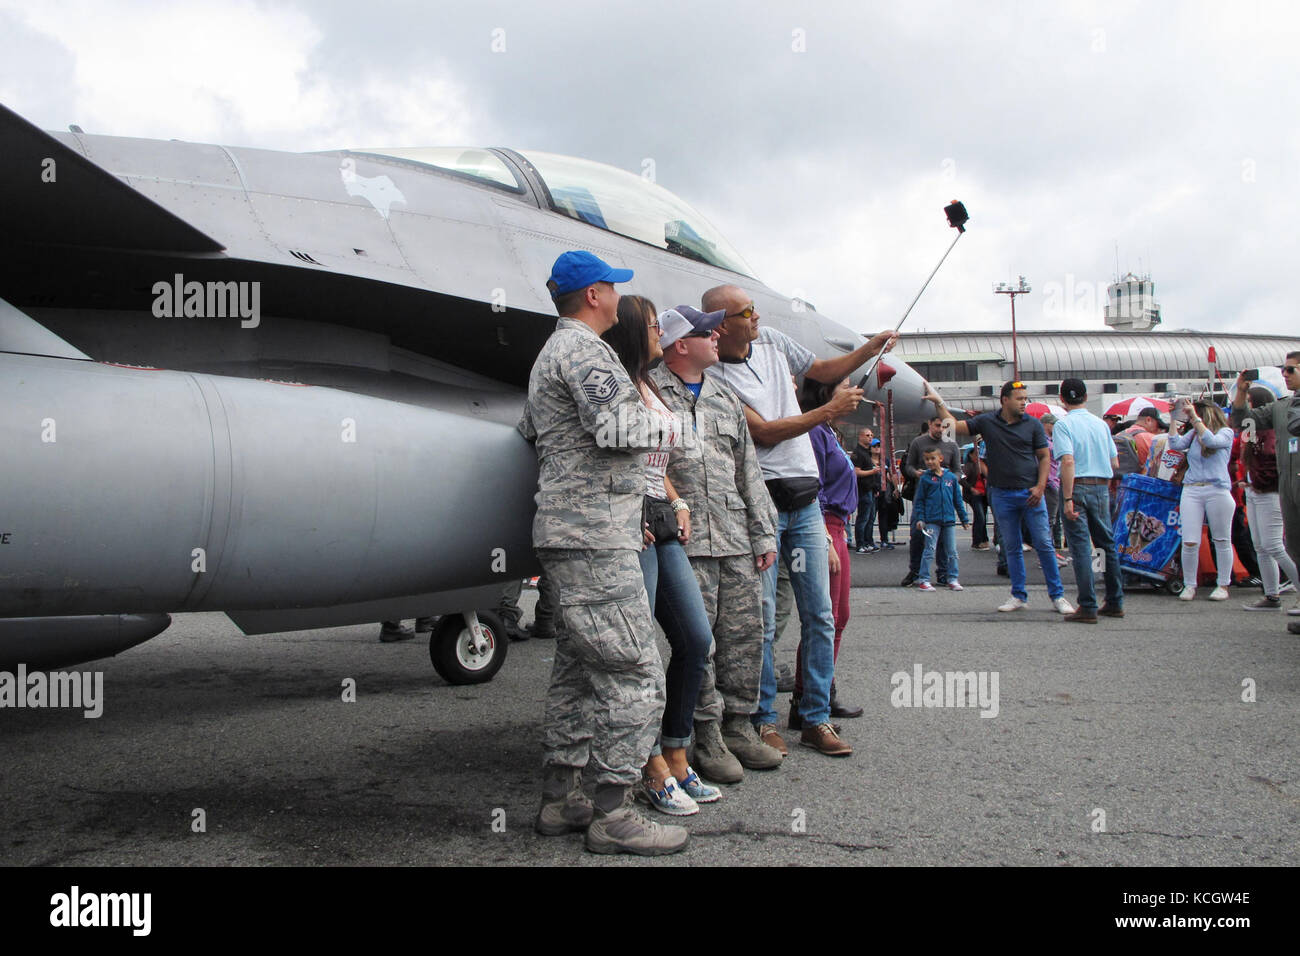 El Sargento Primero de la Fuerza Aérea de EE.UU. Jeff Hopper y John Bonovich, ambos asignados a la Guardia Nacional Aérea de Carolina del Sur el 169º Escuadrón de Mantenimiento de Aeronaves, tome un selfie con visitantes a la Fuerza Aérea Colombiana la Feria Aeronautica Internaccional - Colombia en Rionegro, 15 de julio de 2017. La Guardia Nacional Aérea de Carolina del Sur está respaldando su estado socio con dos F-16 para el air show en Rionegro, Antioquia, Colombia desde julio 13-16, 2017. La participación militar de los Estados Unidos en el air show proporciona una oportunidad para fortalecer nuestros militares con relaciones regionales par Foto de stock